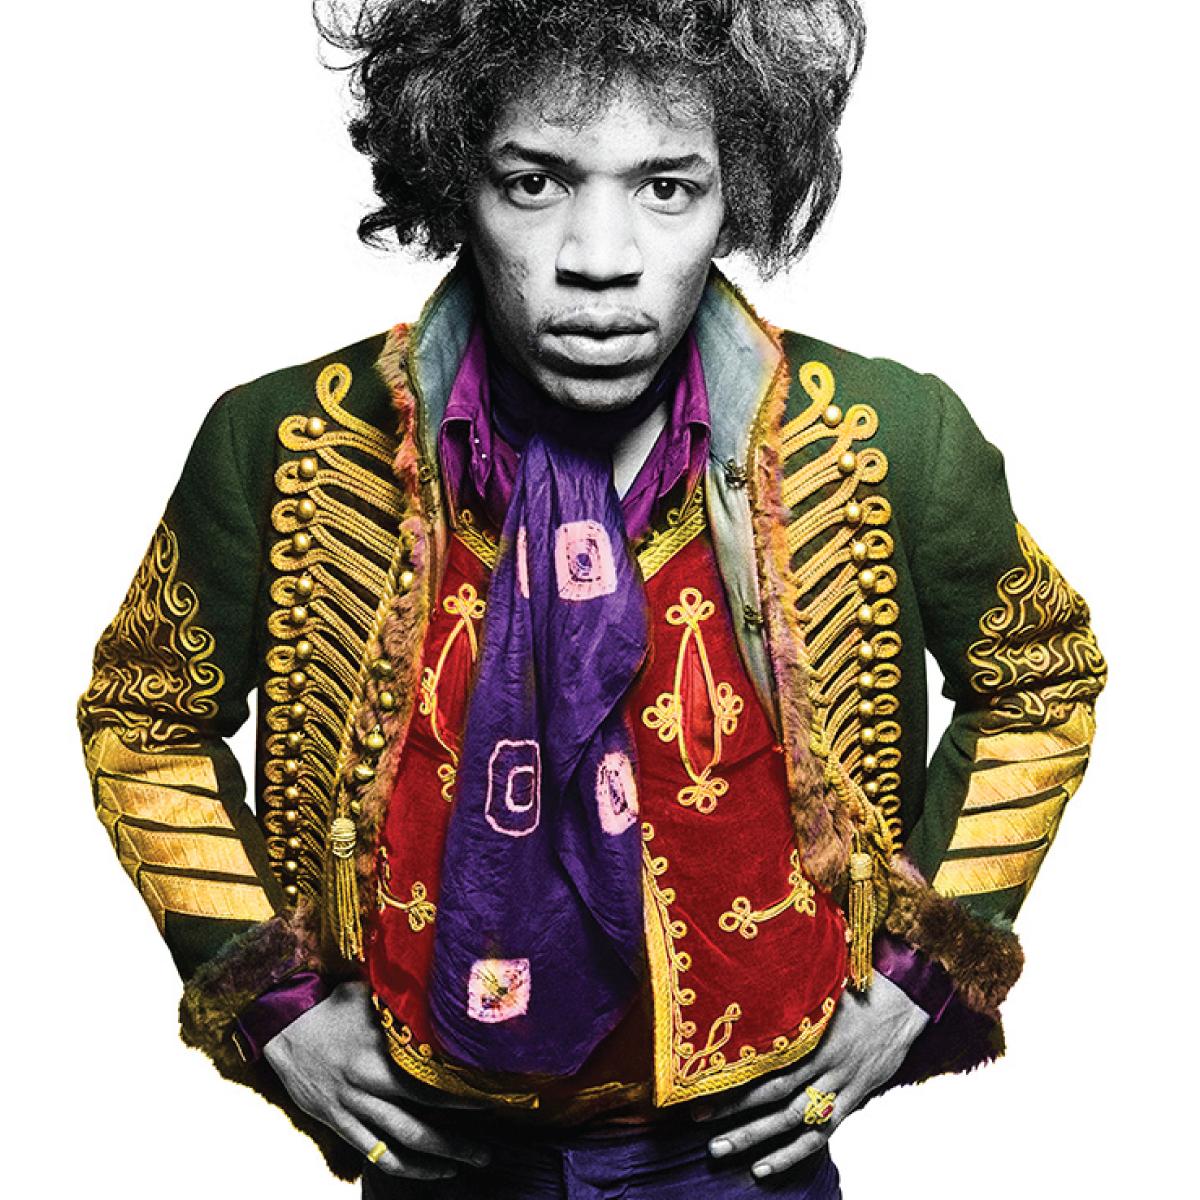 Jimi Hendrix "Klassische Farbe" 1967 von Gered Mankovitz

Erhältlich in den folgenden Größen, signiert und nummeriert von Gered Mankowitz.

16x20" - Auflage 50
20x24" - Auflage 50
30x40" - Auflage 25
50x53" - Auflage 24
